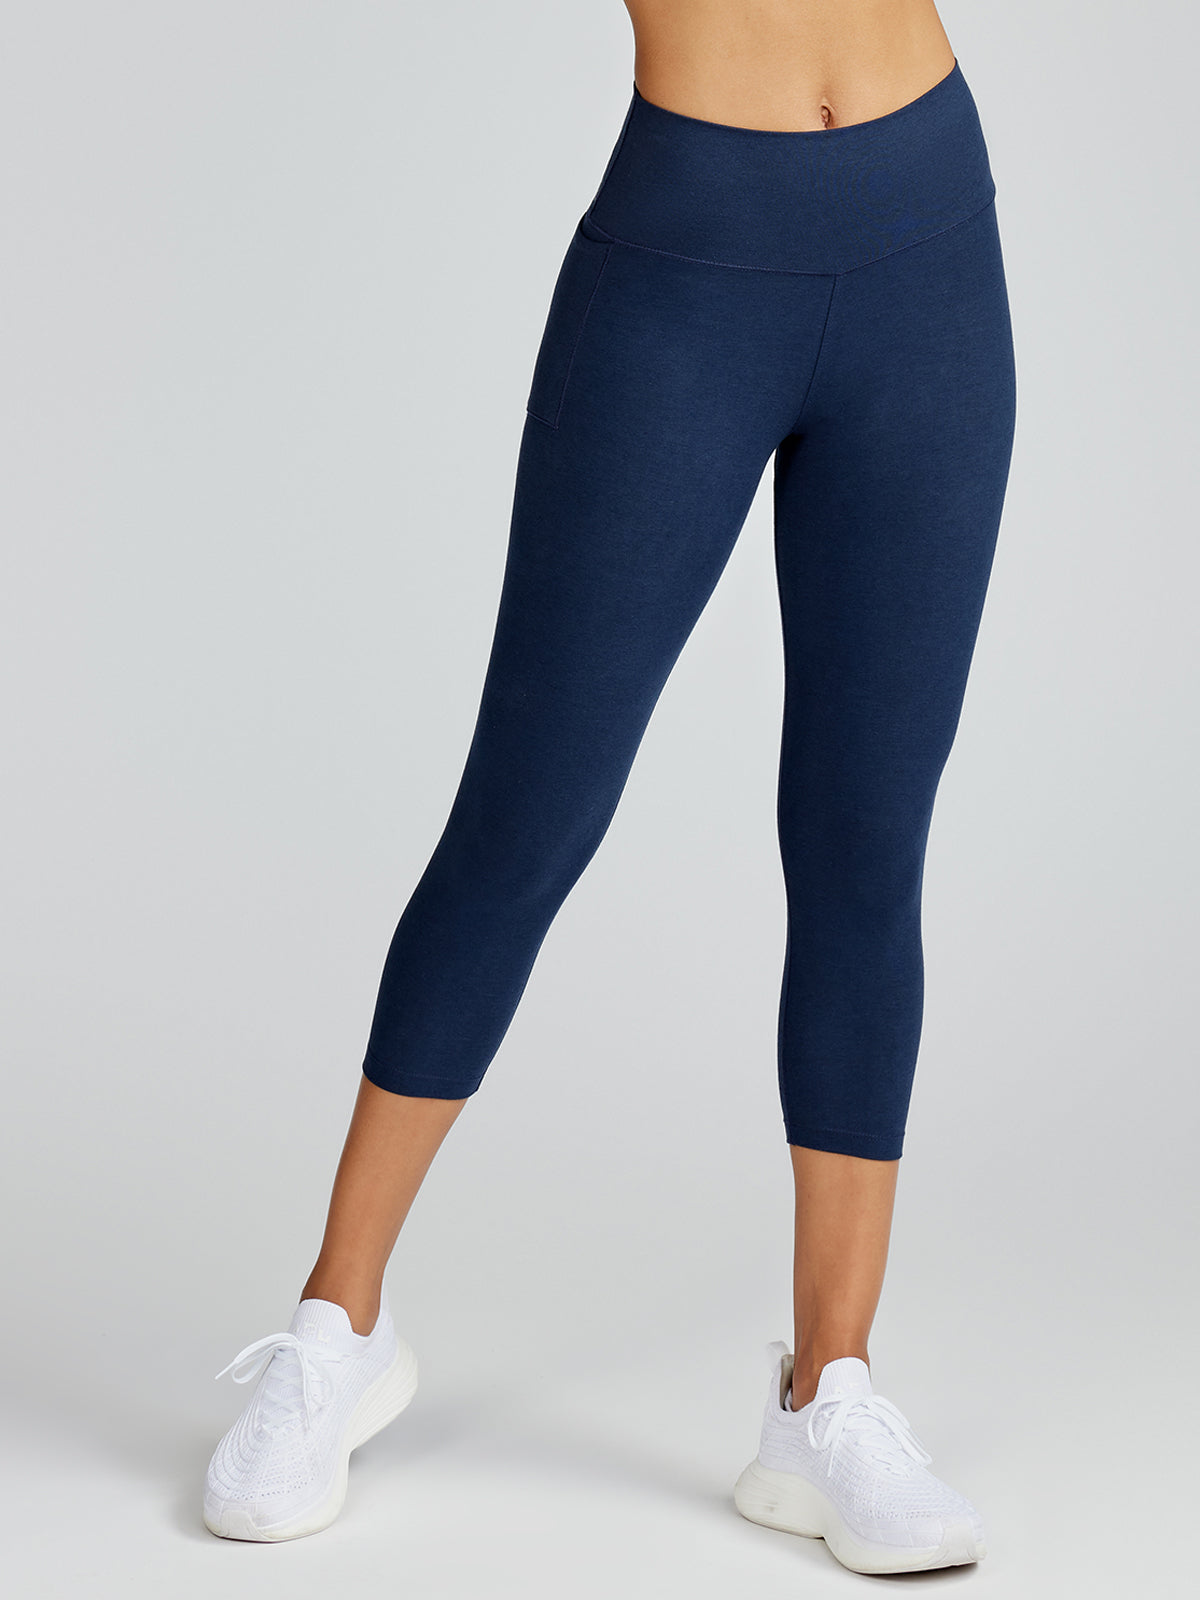 ZUMBA Wear Women's Capri Pants Bold Black/blue Stretch Capri Pants Size L High  Rise Capri Pants Size L Zumba Lover Pants -  Canada